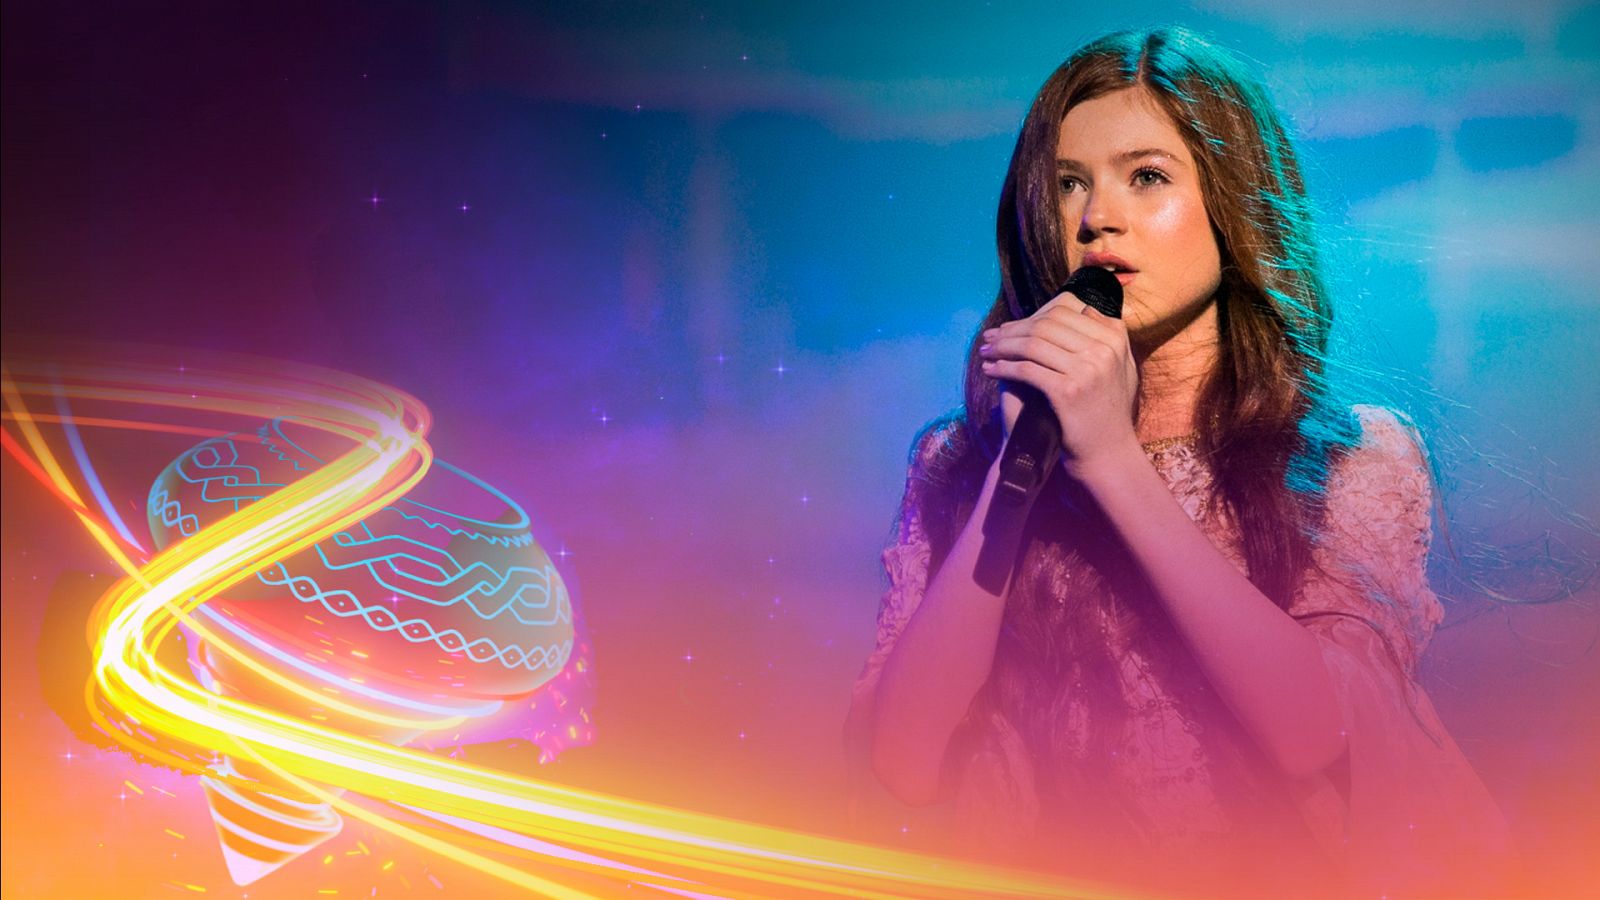 Eurovisión Junior 2022 - Irlanda: Sophie Lennon canta "Solas" - Ver ahora